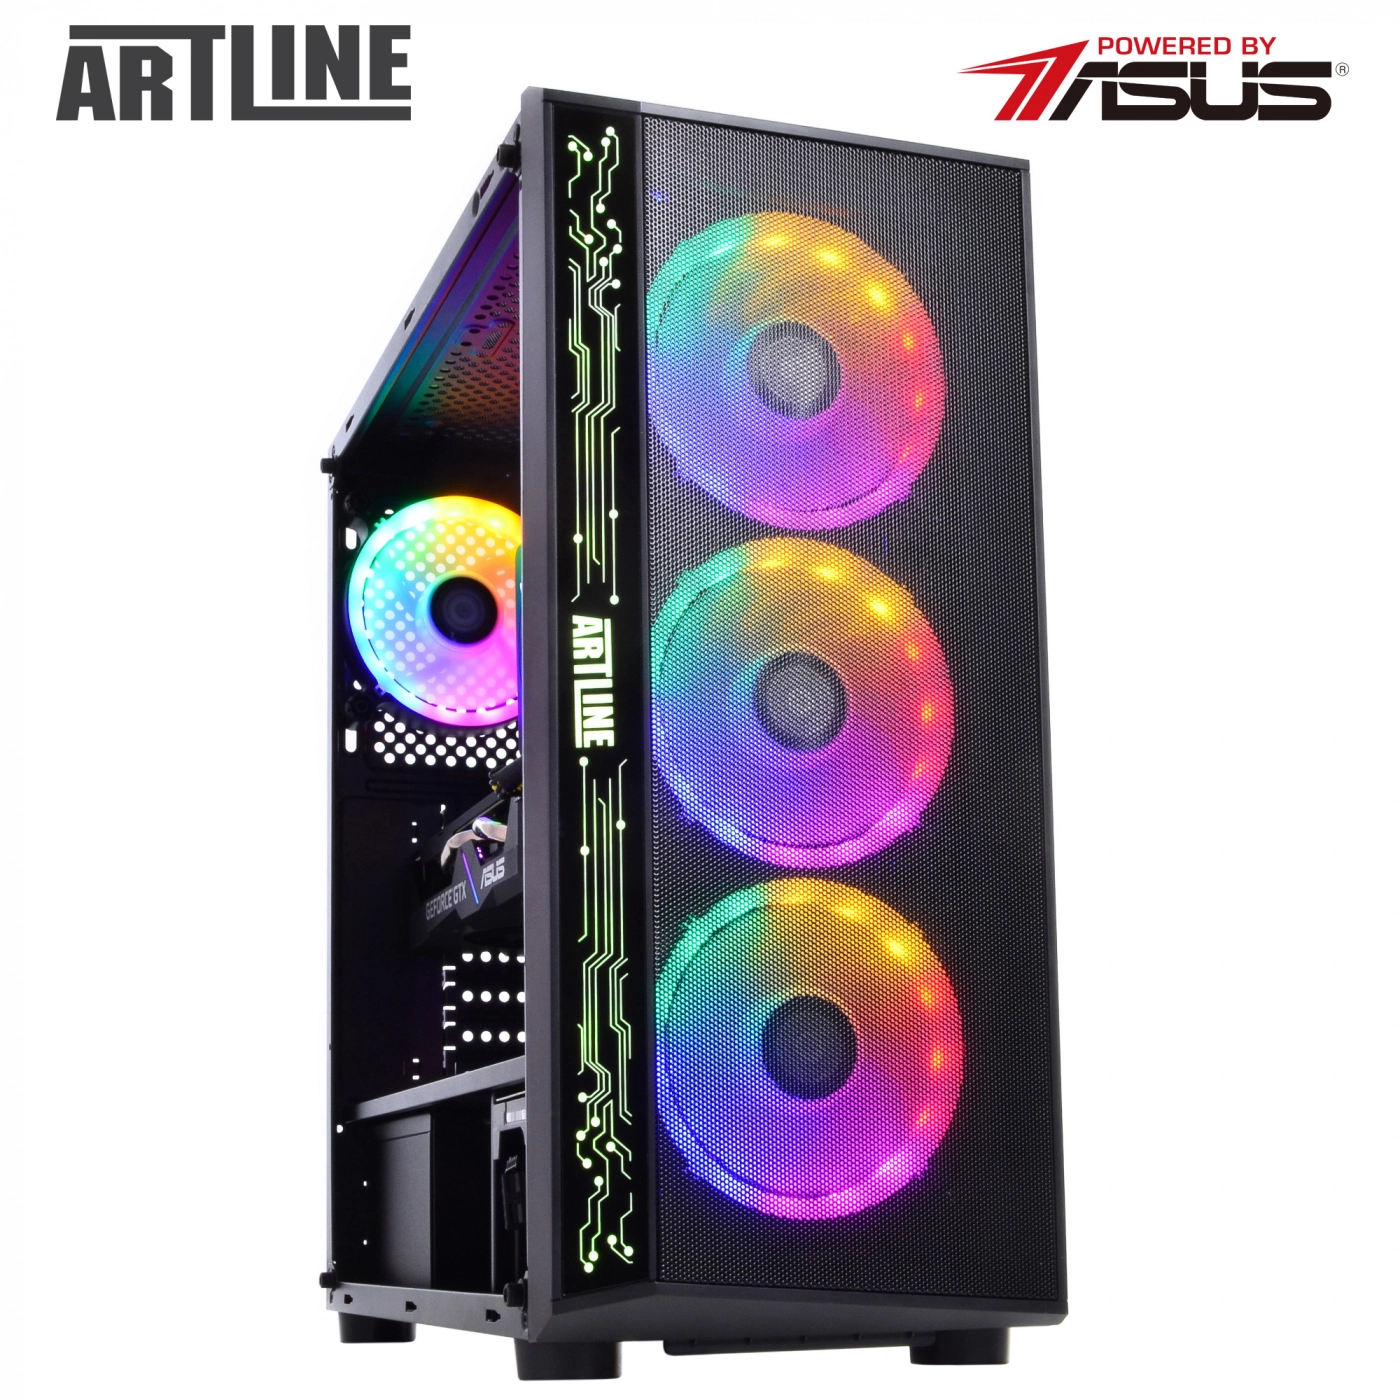 Купить Компьютер ARTLINE Gaming X75v15 - фото 2